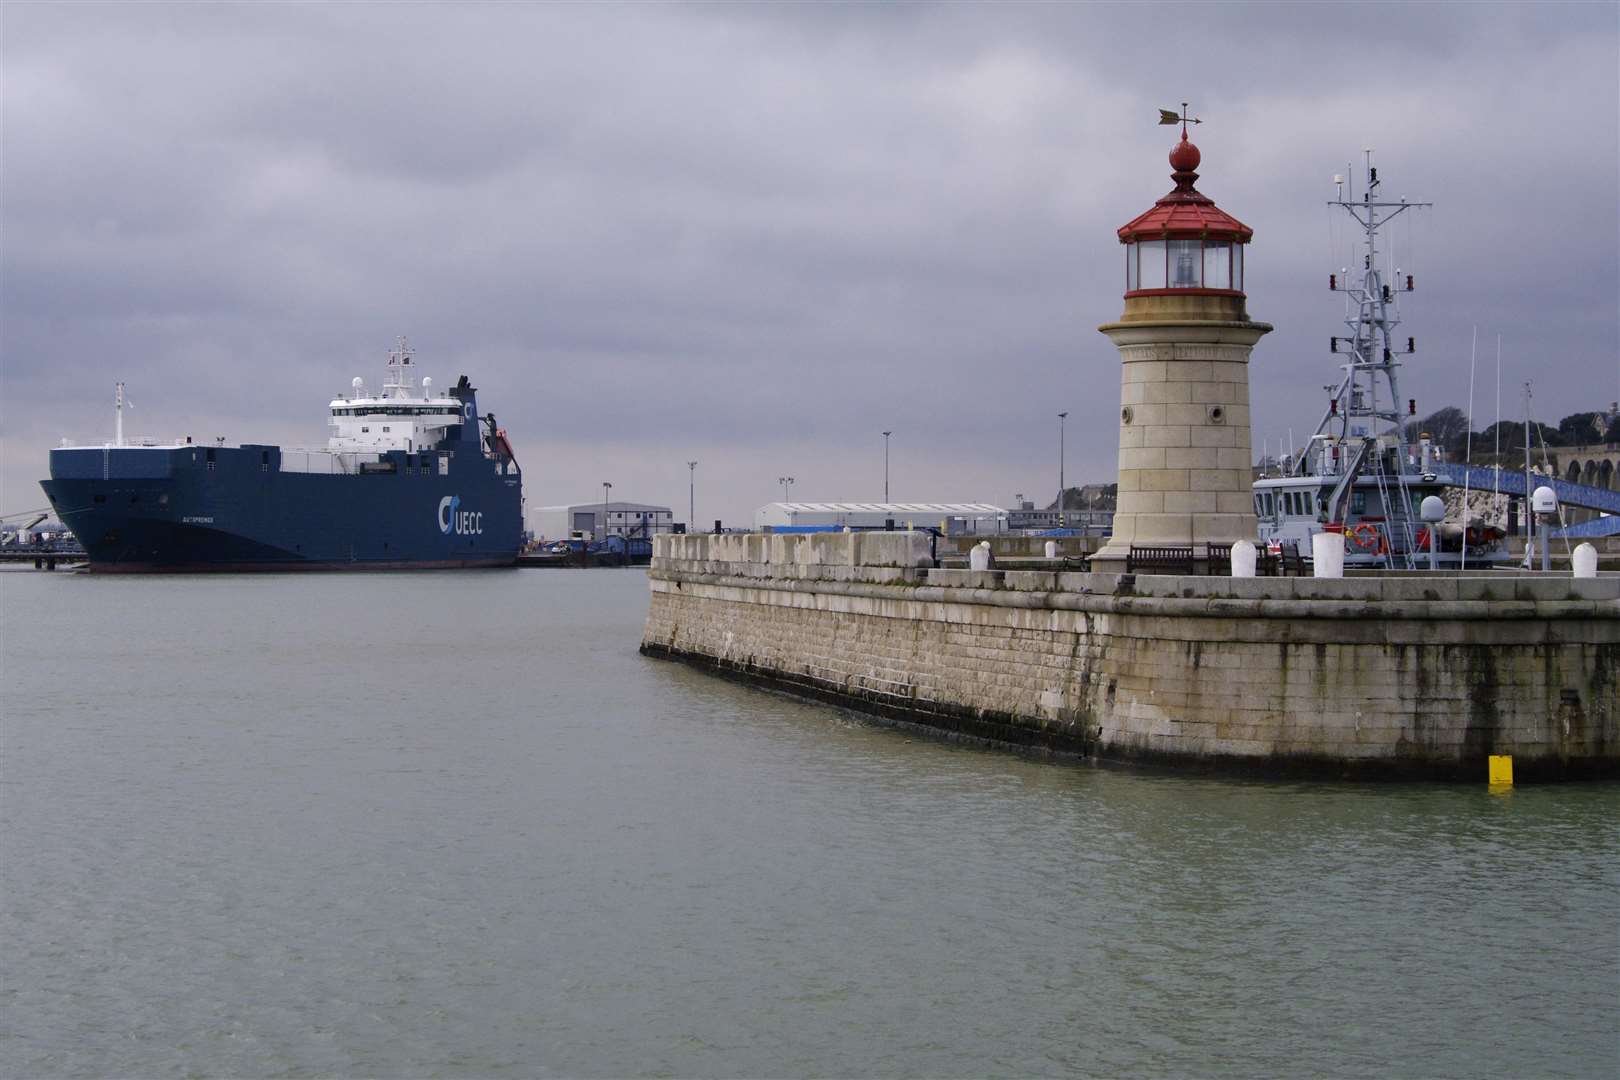 Ramsgate port